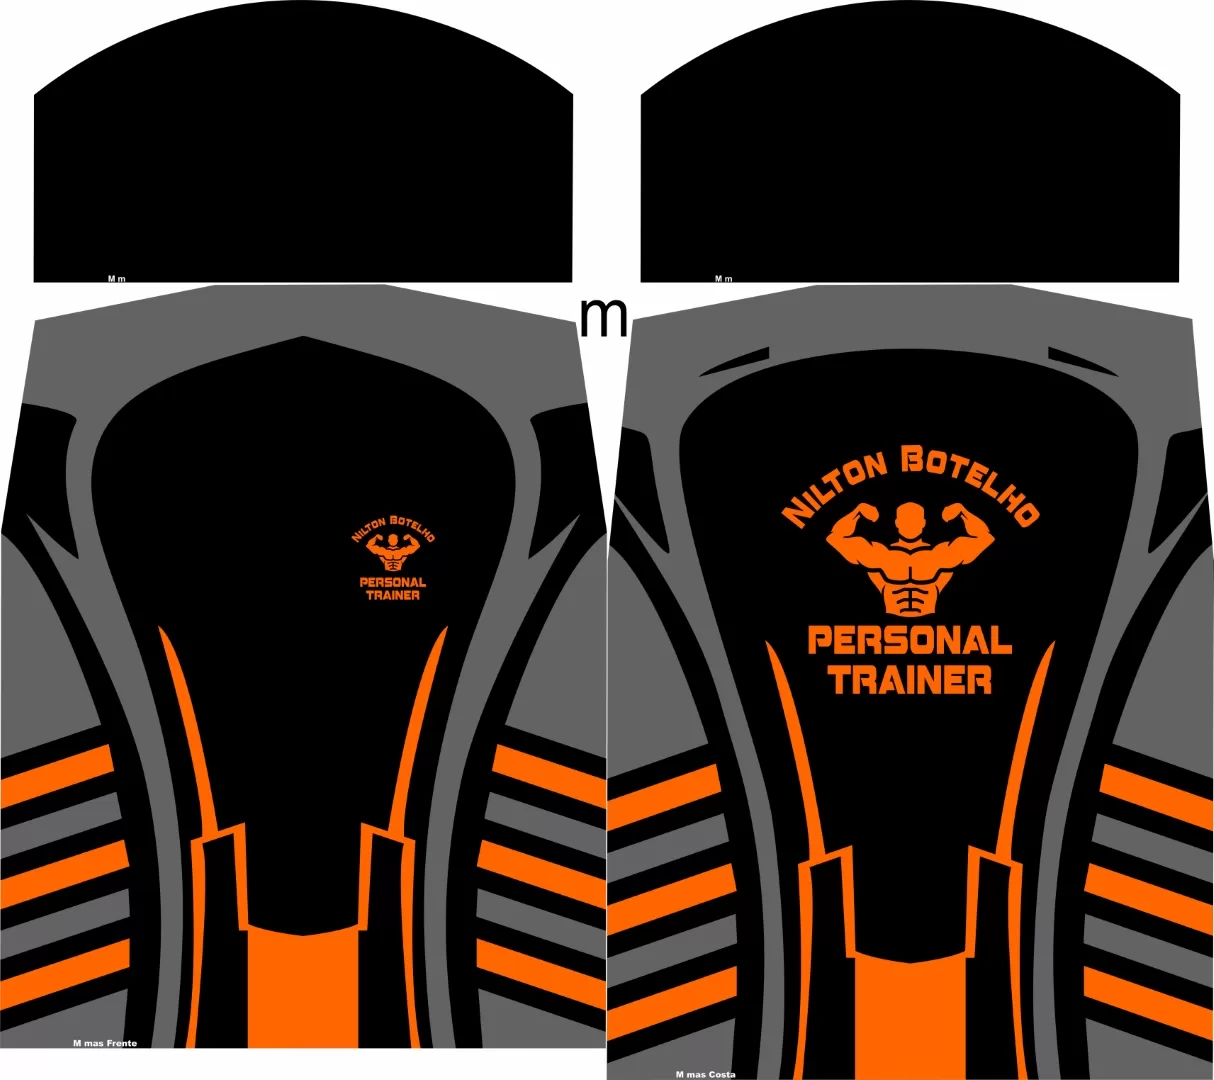 Arte de camisa para Personal Trainer nas cores preta e laranja. Esta imagem é uma arte criada no software Corel Draw, apresentando detalhes de linhas largas na cintura e áreas cinzas ascendentes. As cores predominantes são preto, laranja e cinza.